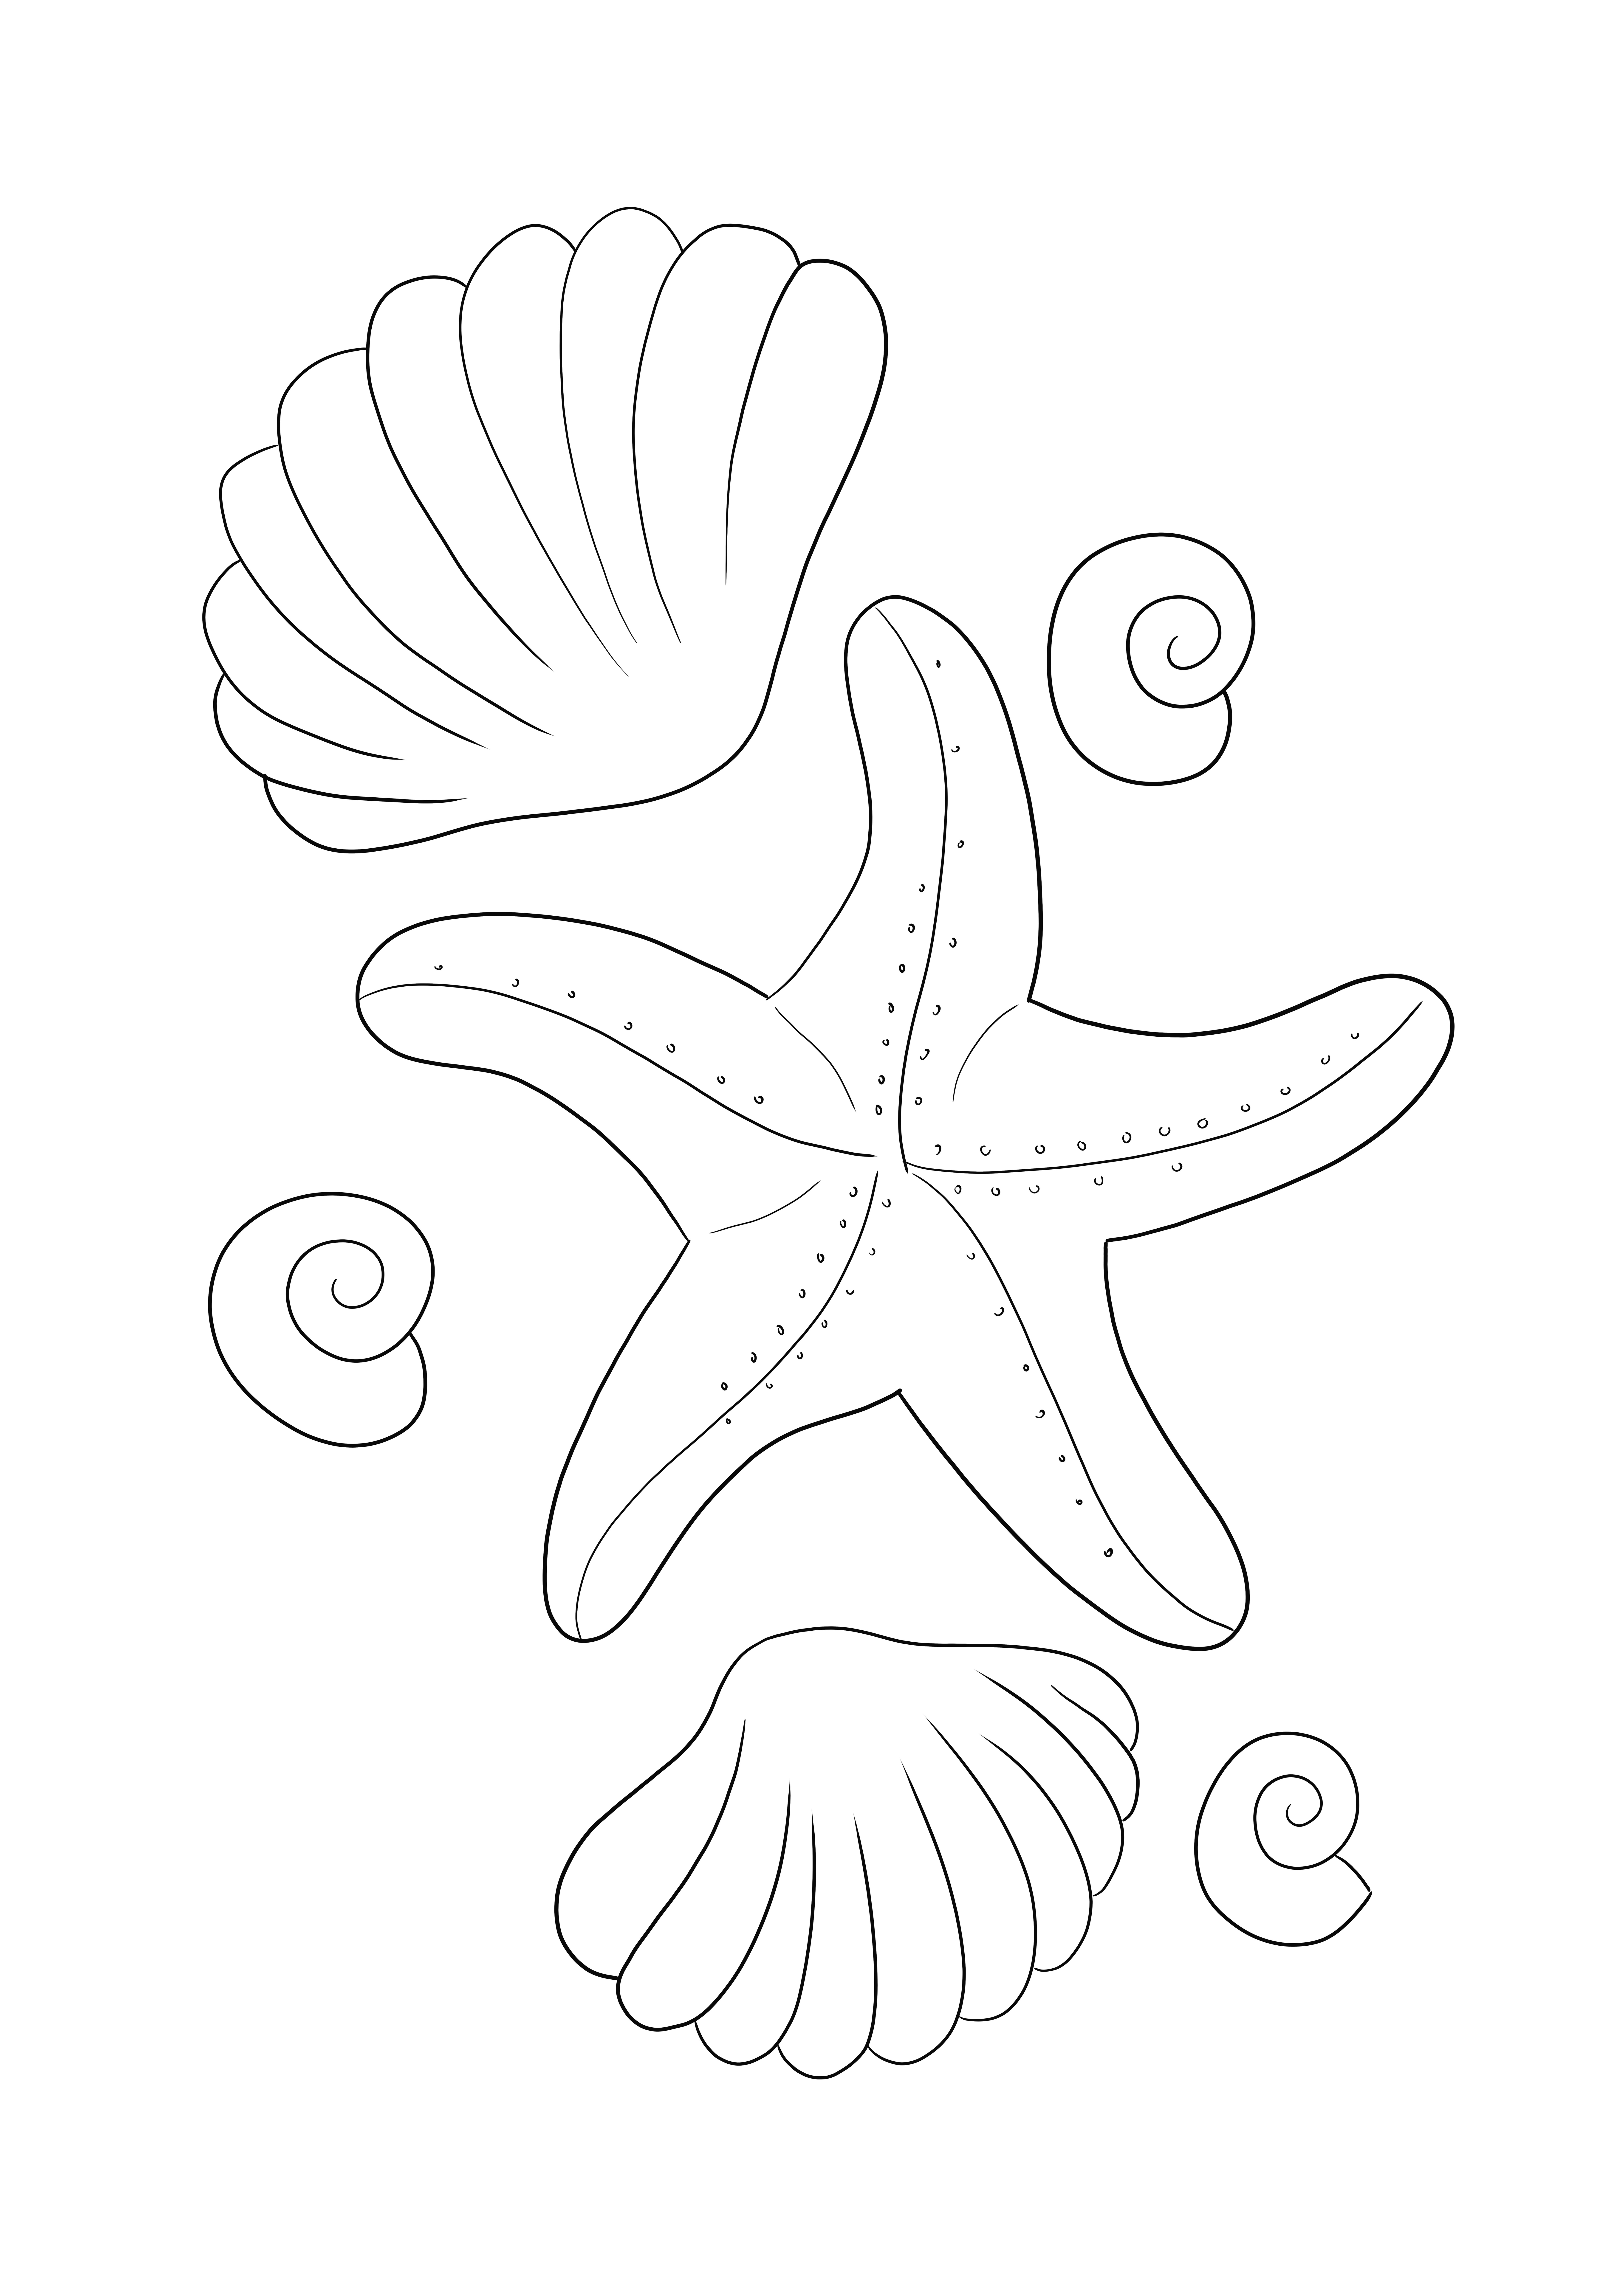 Immagine da colorare di stelle marine e conchiglie per la stampa e il download gratuiti